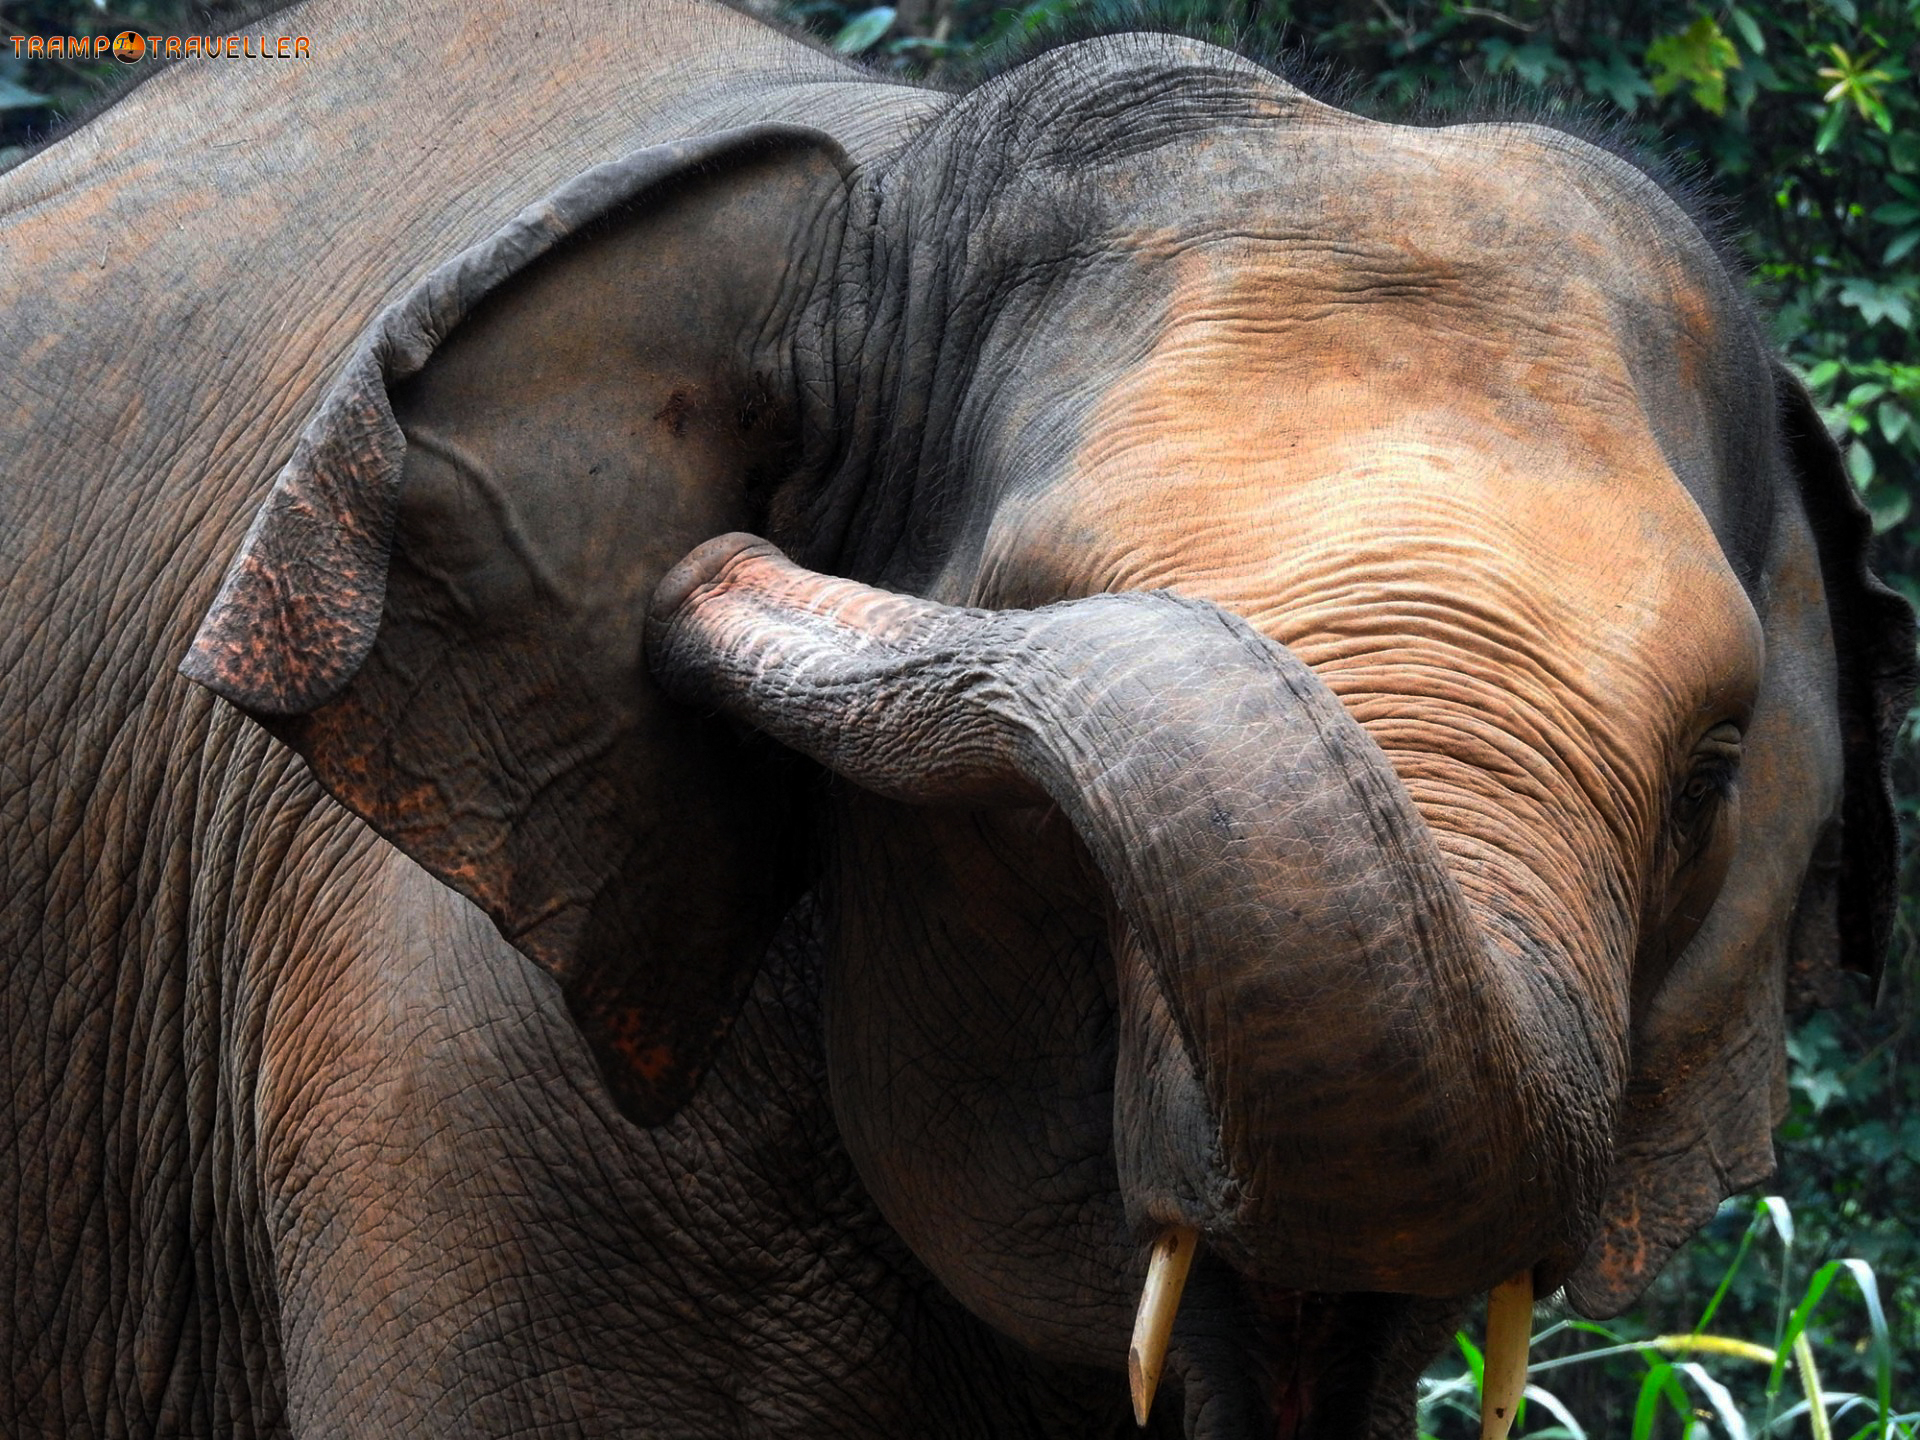 Abhayaranyam Eco Tourism Elephant Centre View